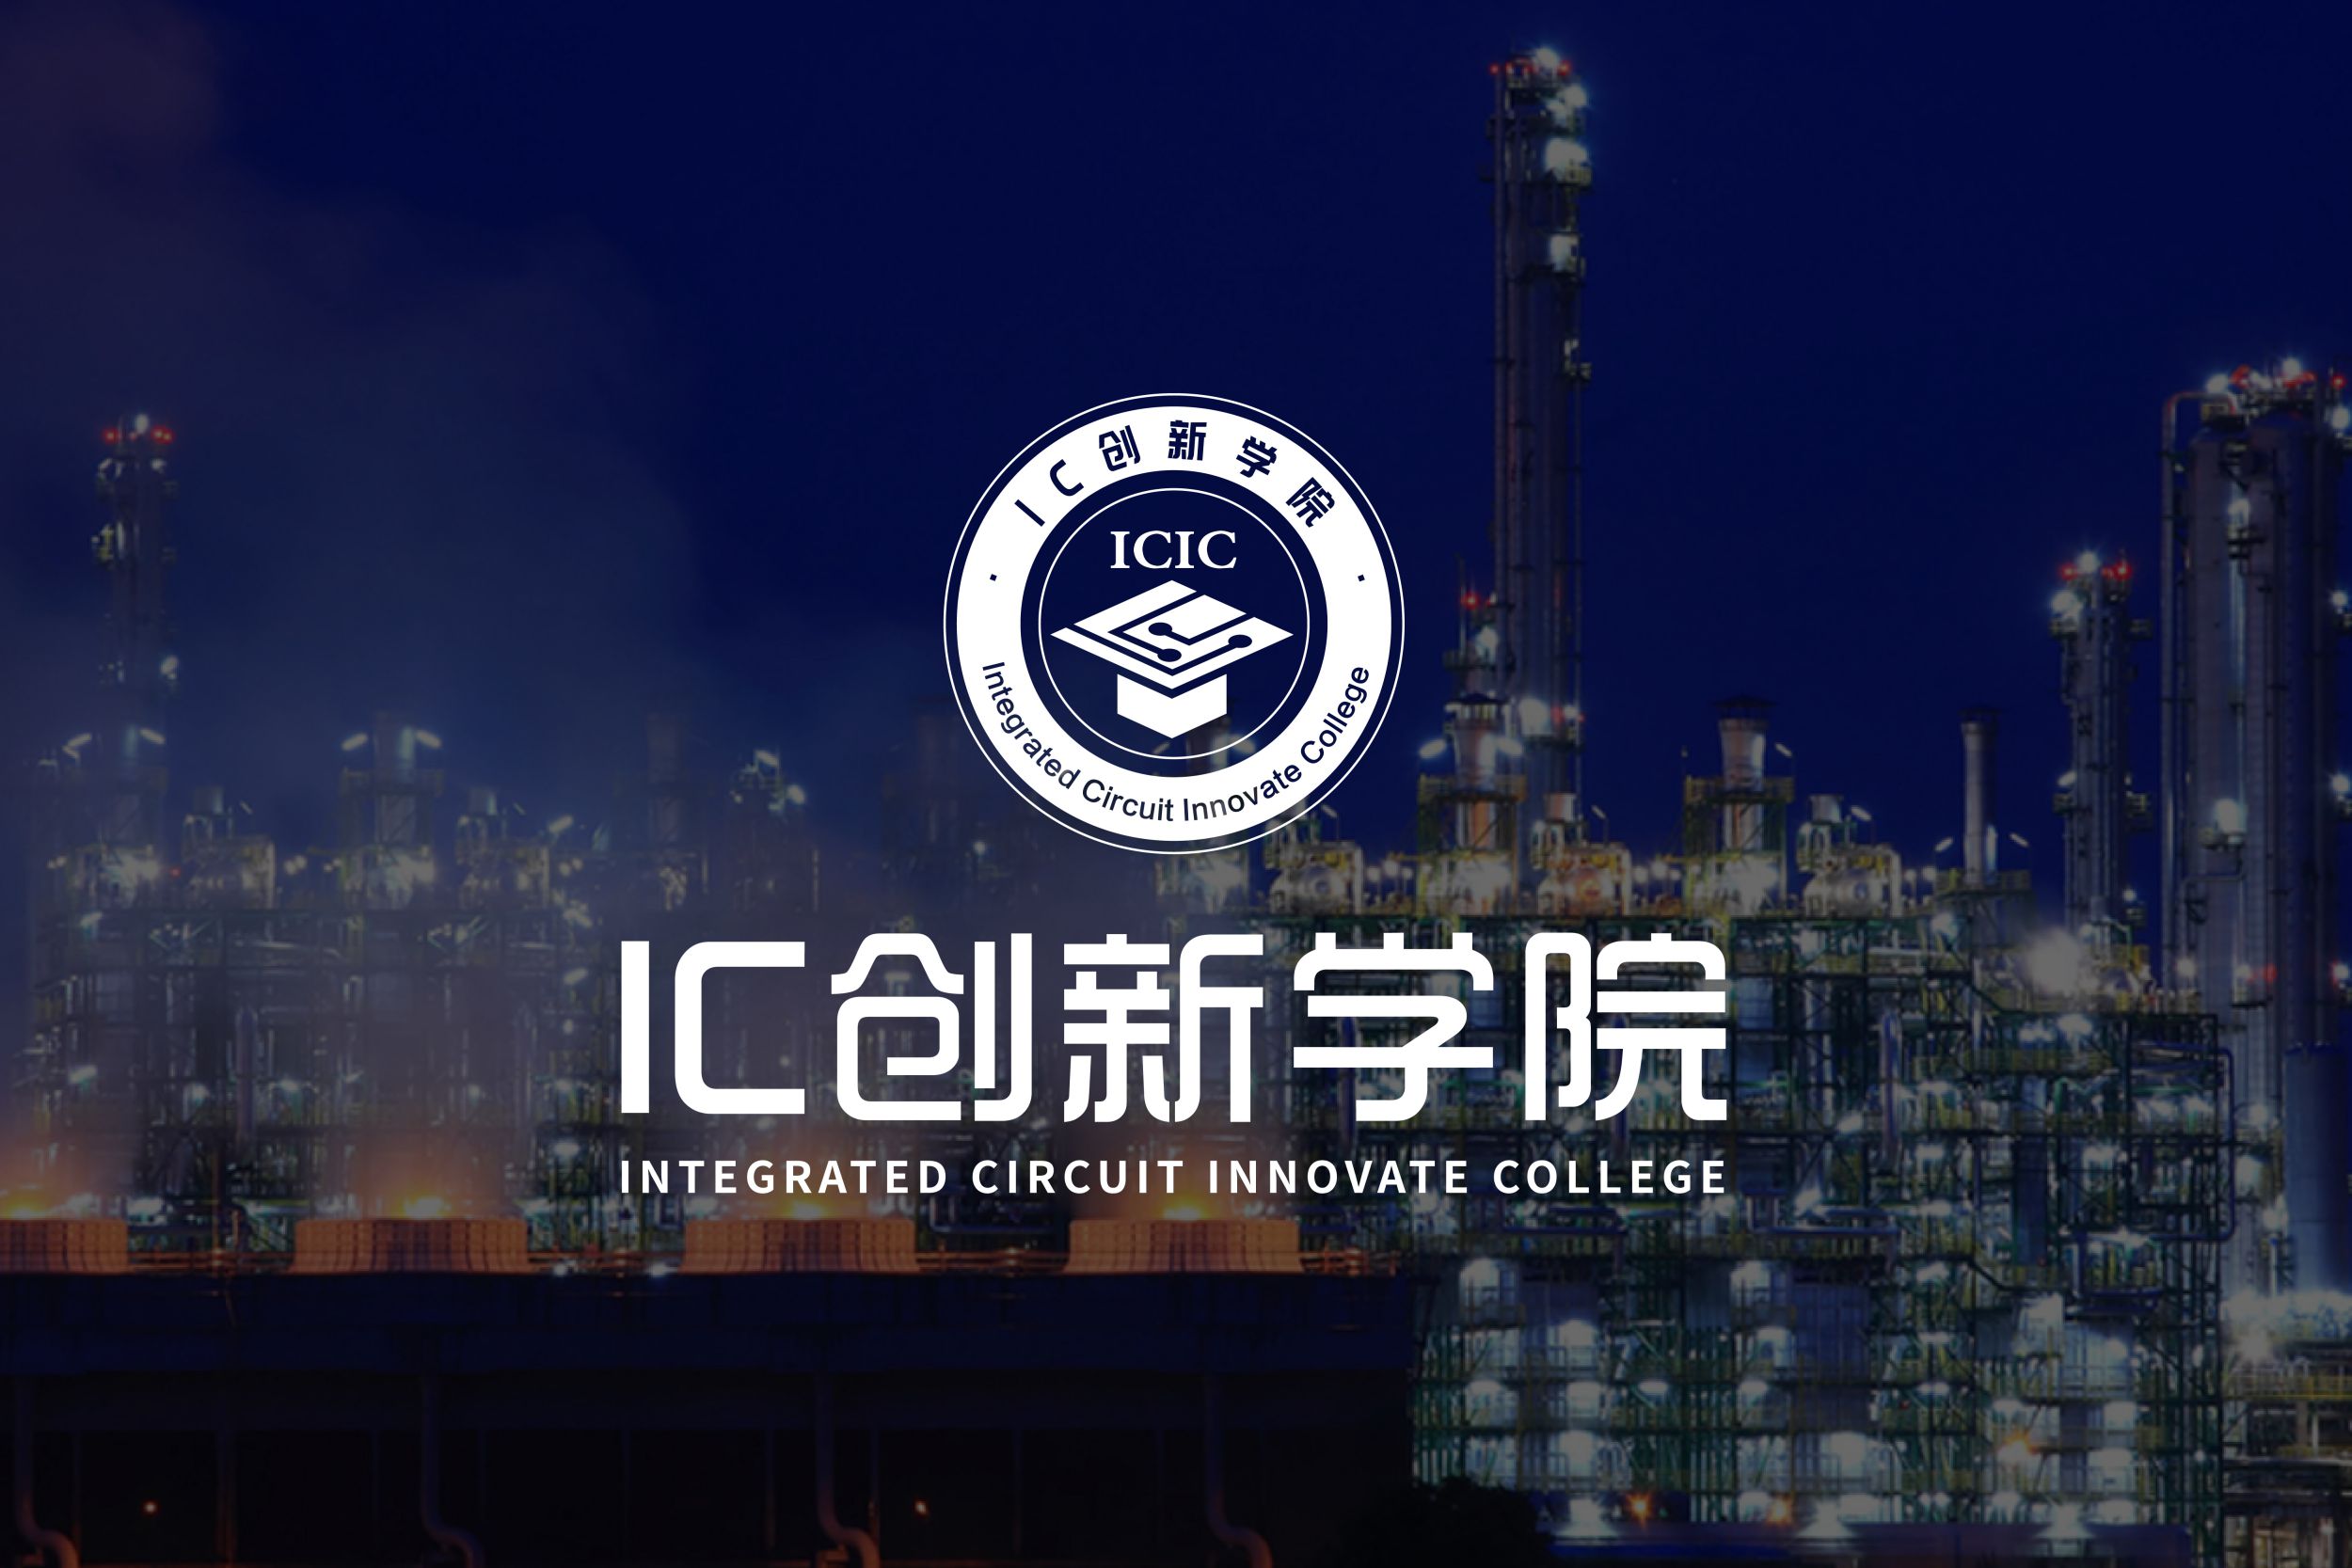 IC创新学院1